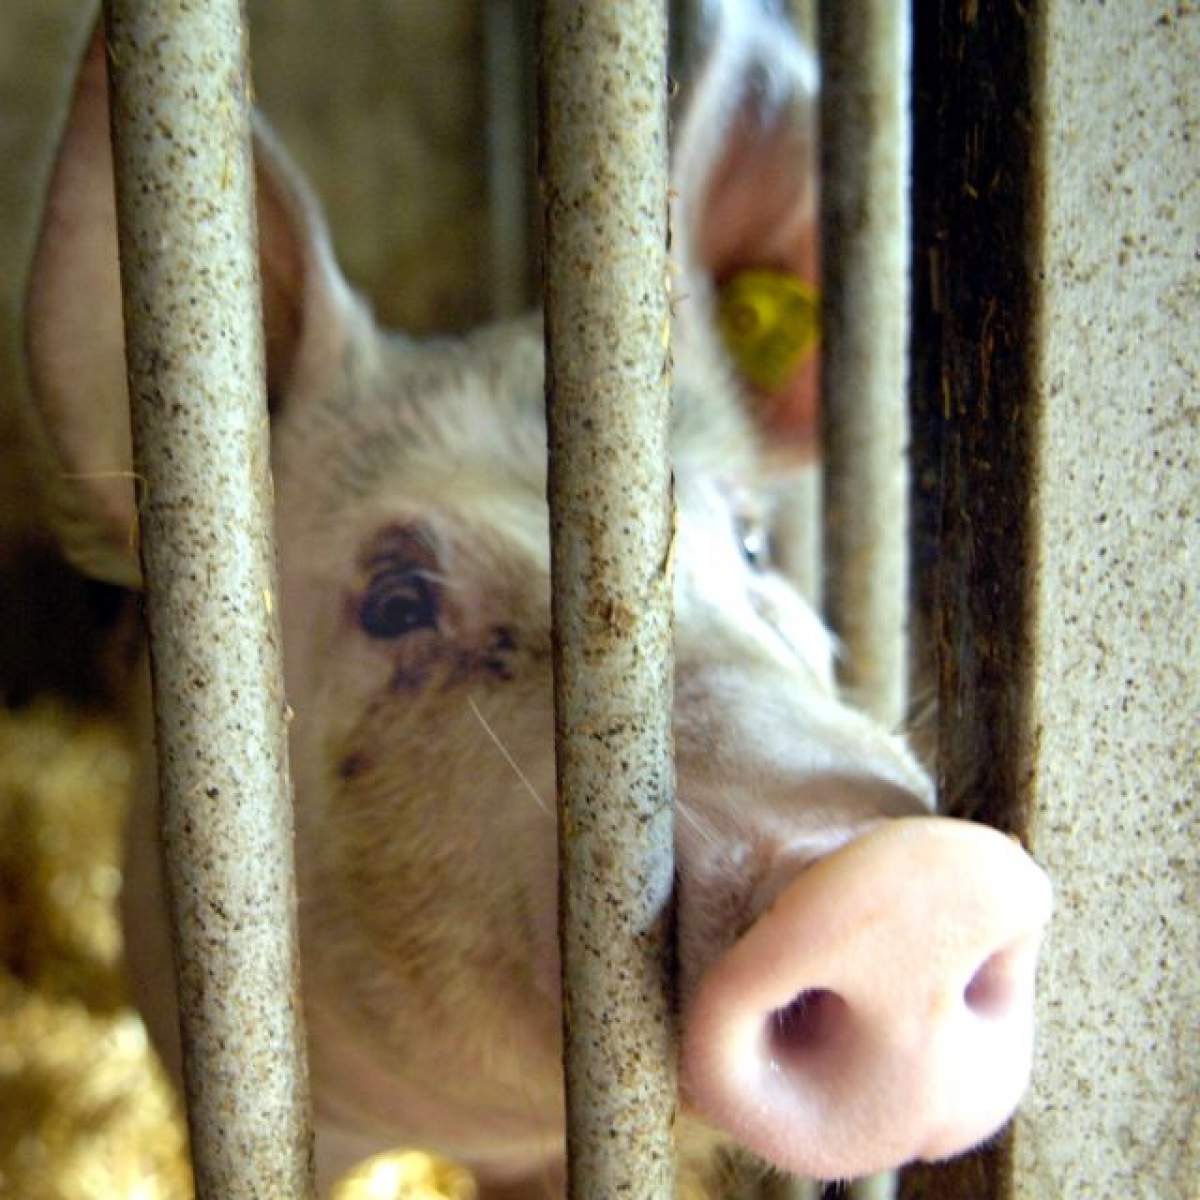 Incredibil, dar adevărat! Un fermier din Suceava are în bătătură un porc rupt din filmele SF